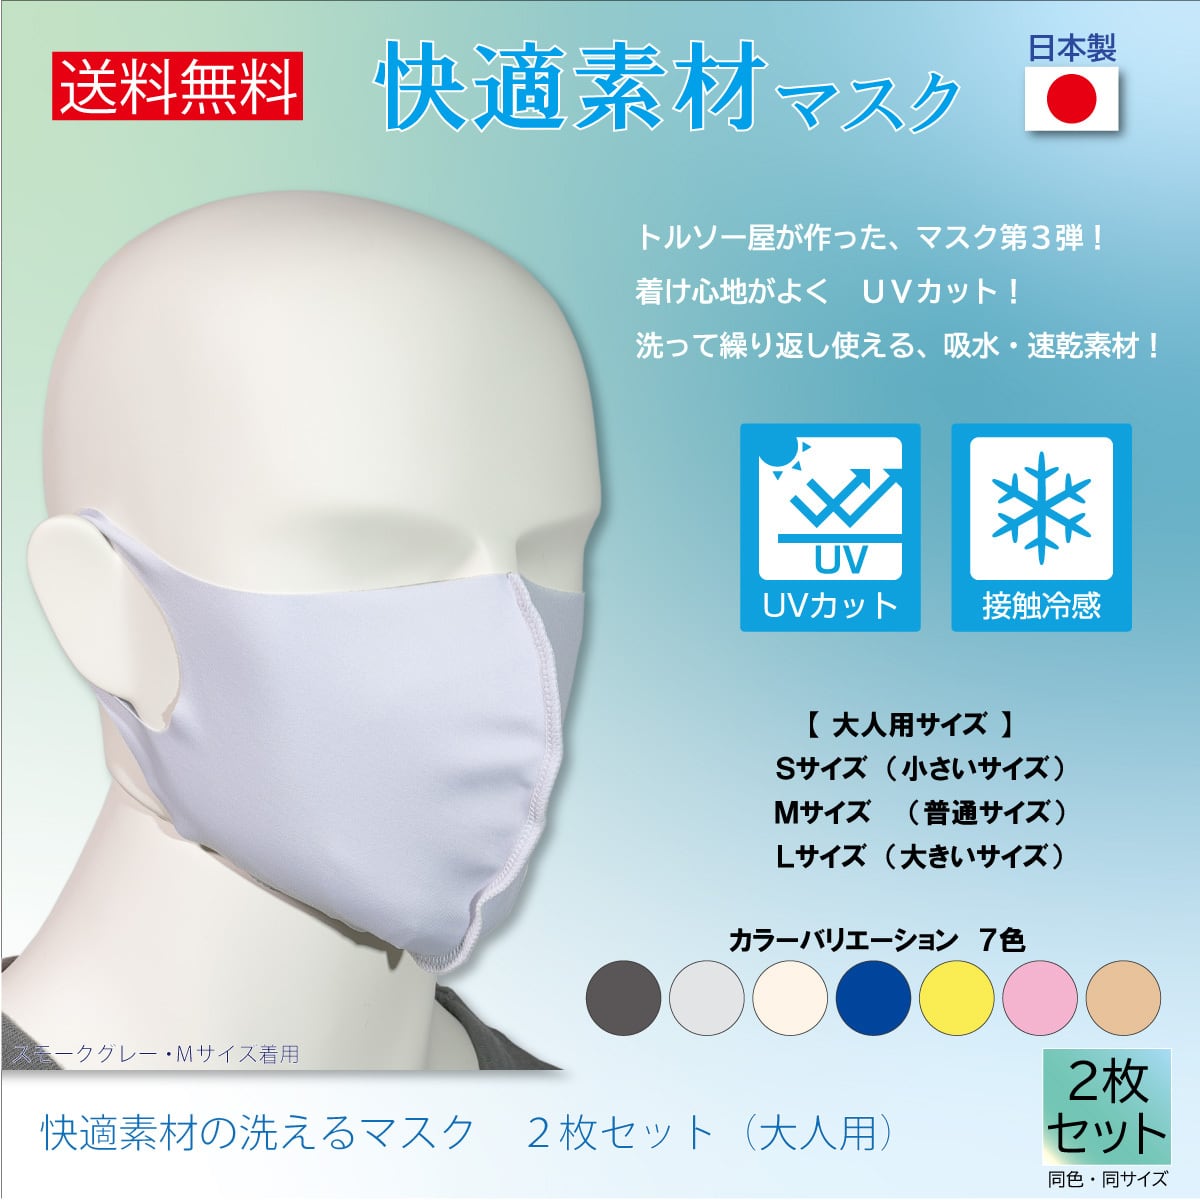 マスク スノーボードウェアメーカーが作った洗えるマスク のど粘膜の保護対策